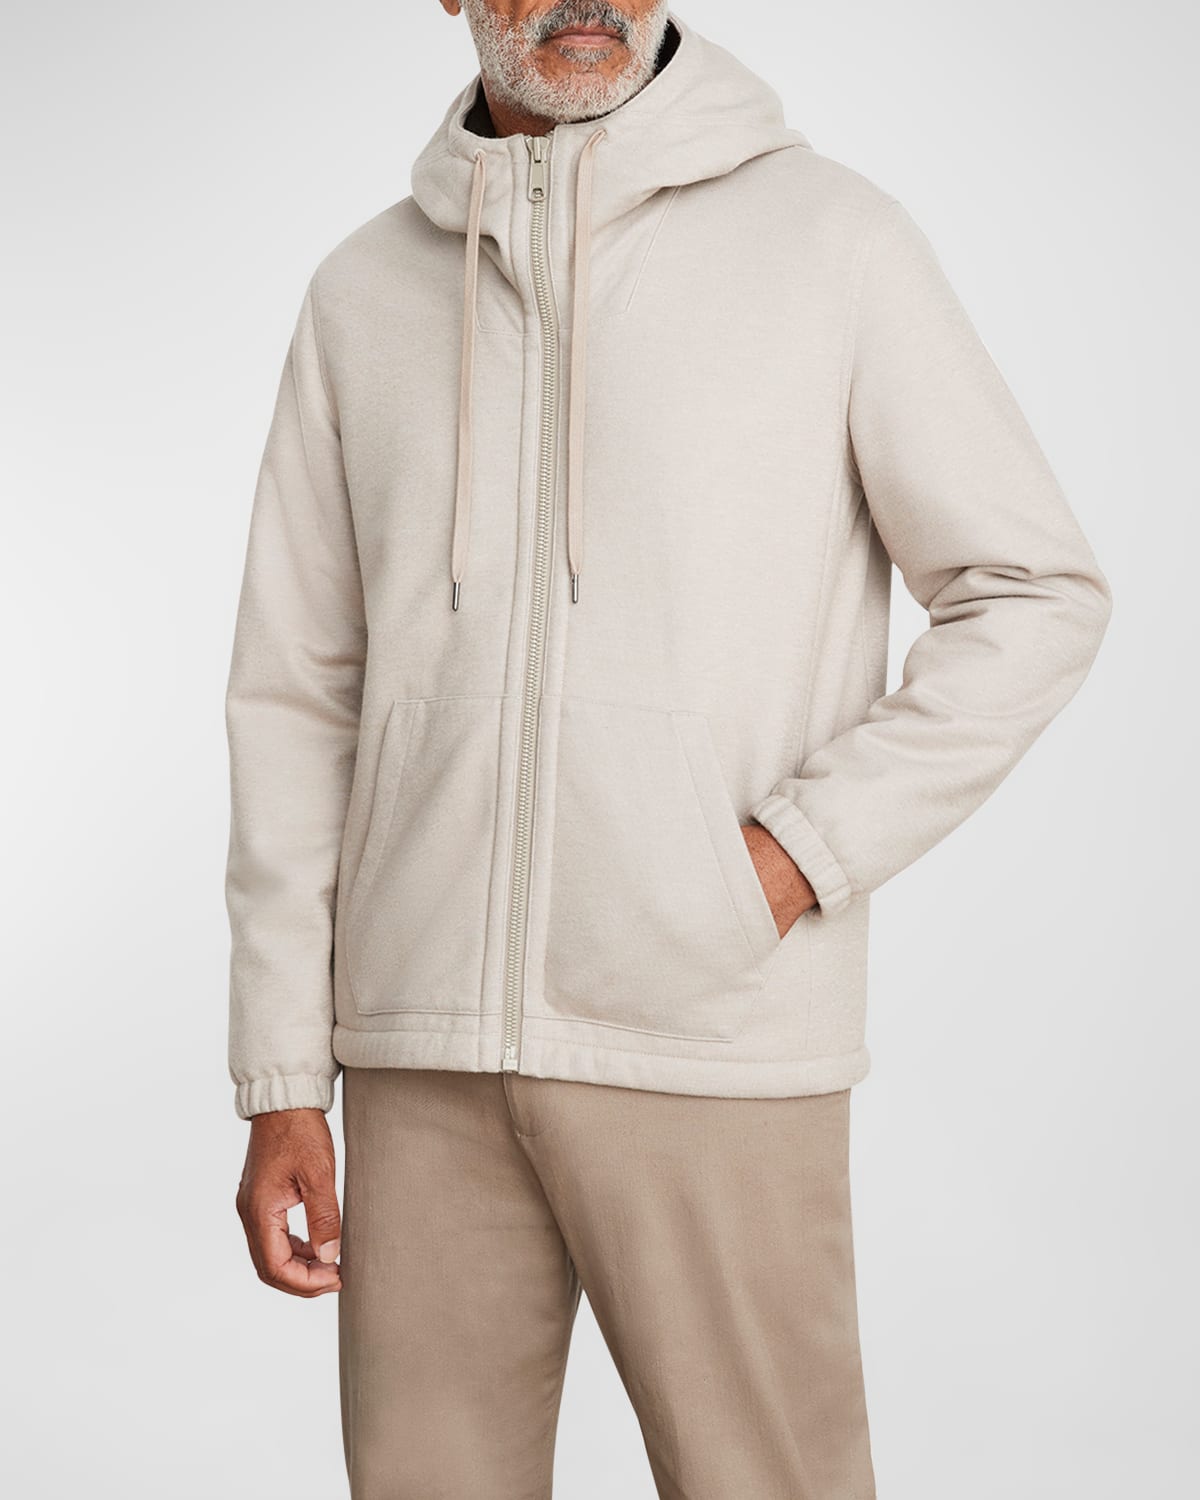 Men's Sherpa-Lined Hooded Knit Jacket